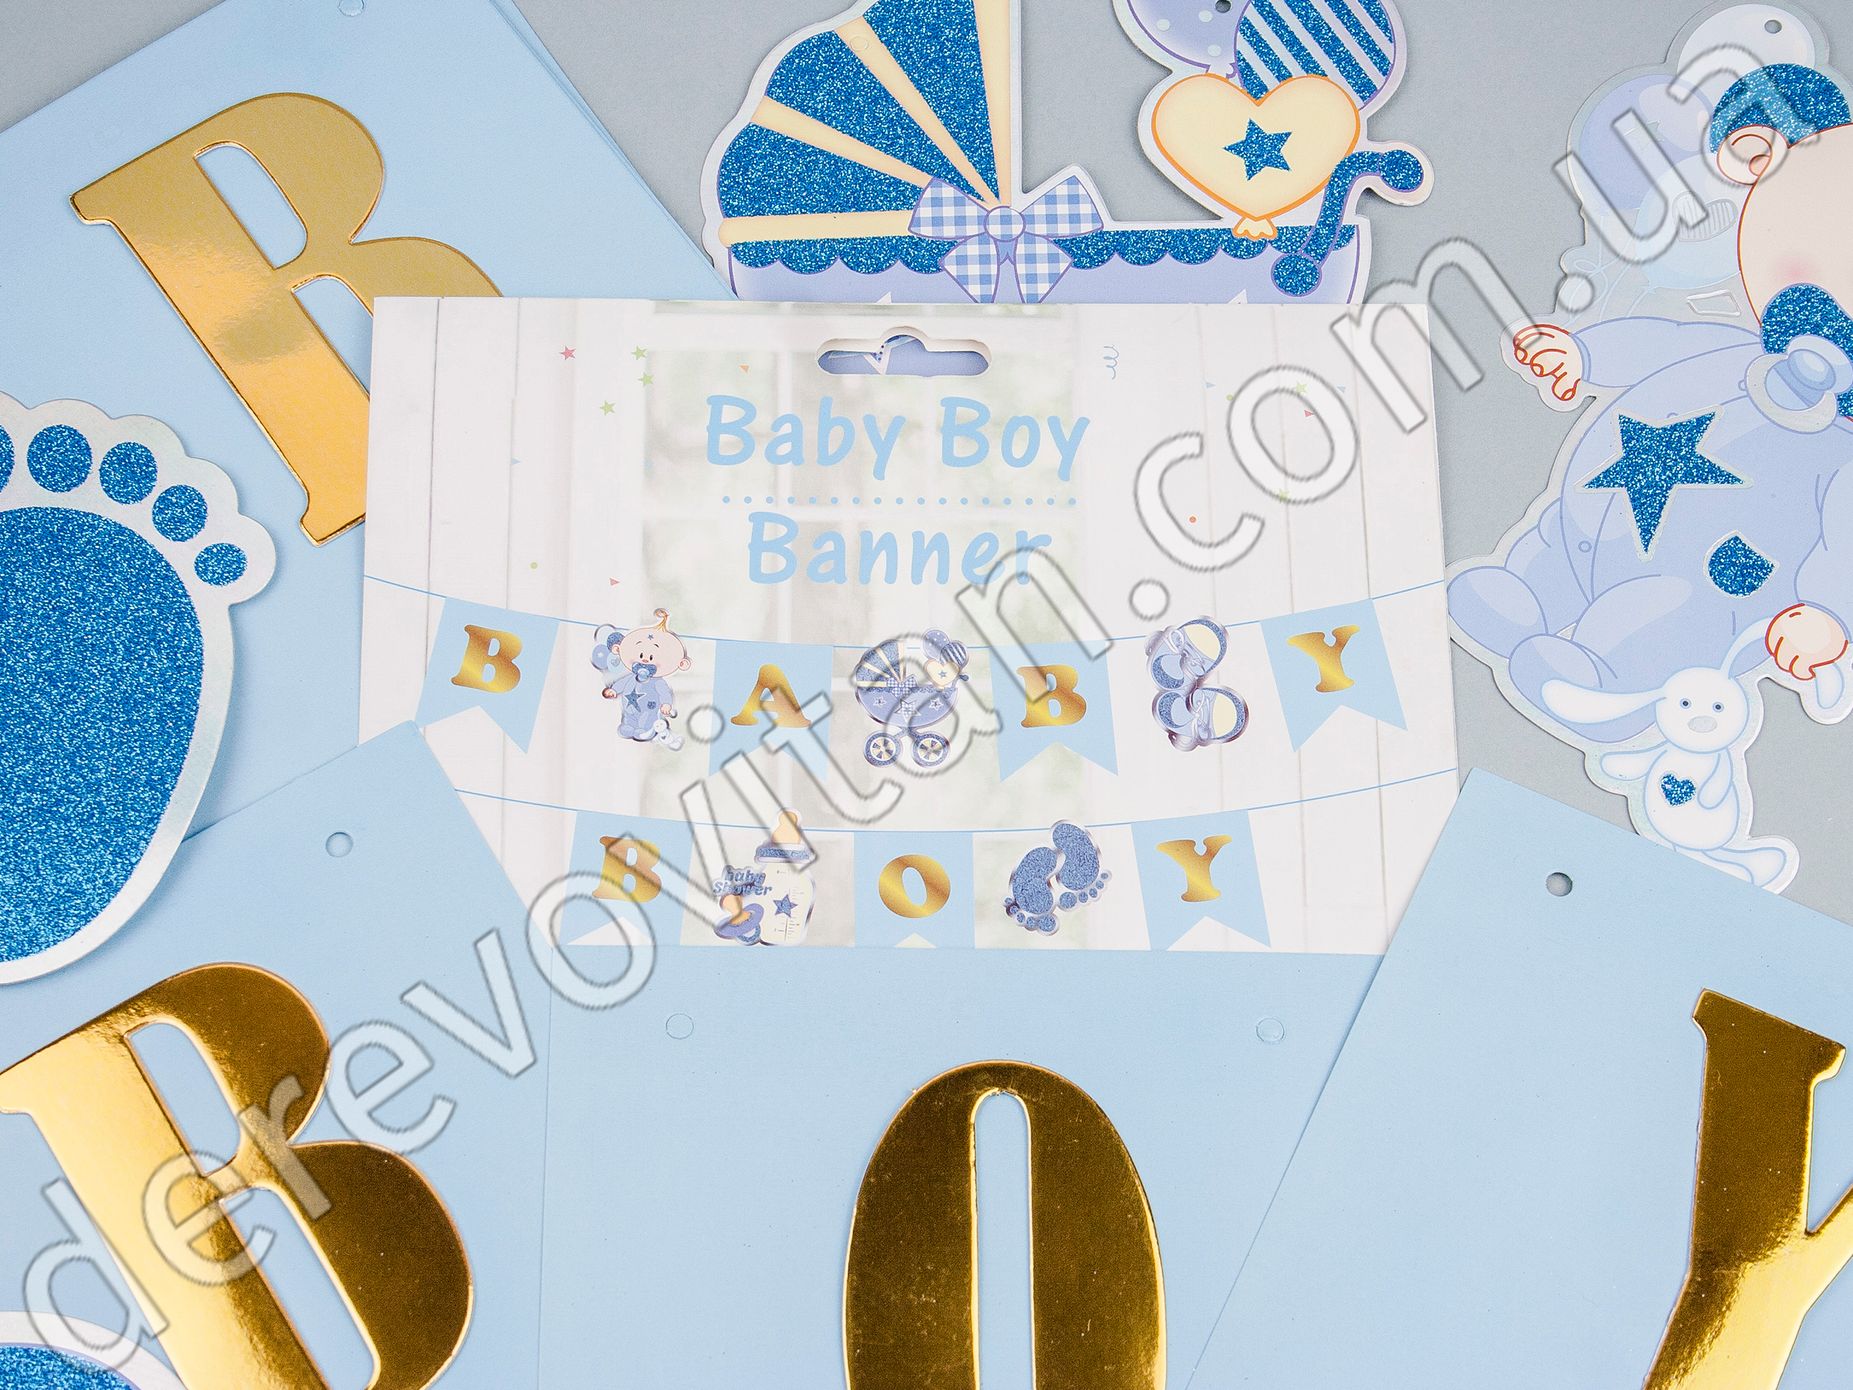 Гирлянда для мальчика на Baby Shower "Baby Boy", голубая 15×19 см×3 м